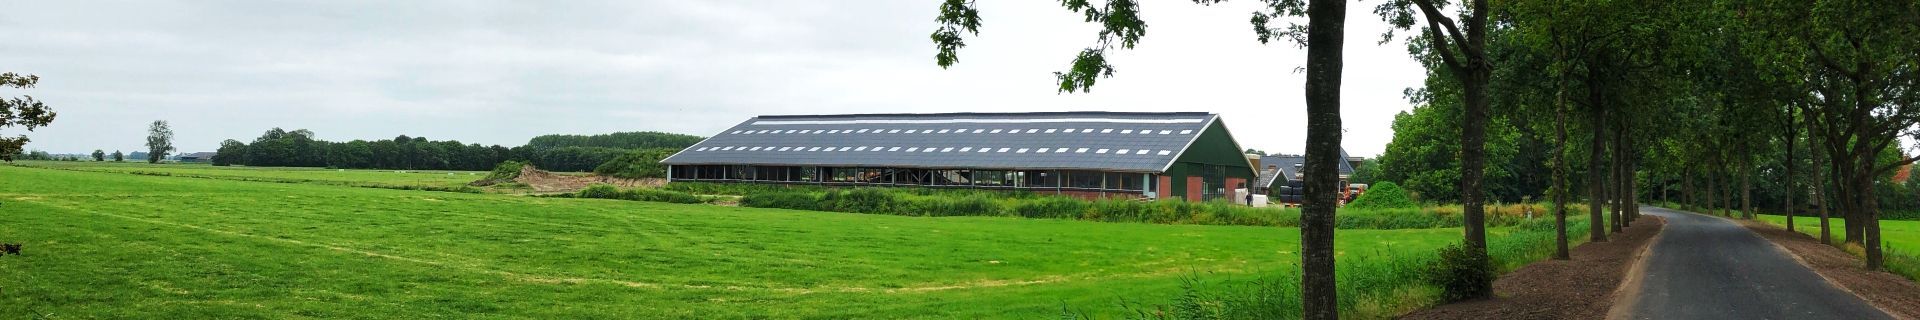 Für Milchviehhalter Douwe Maat ist der Bio-Faktor das zentrale Element mit Blick auf die Stall-Konstruktion und die Tierhaltung.